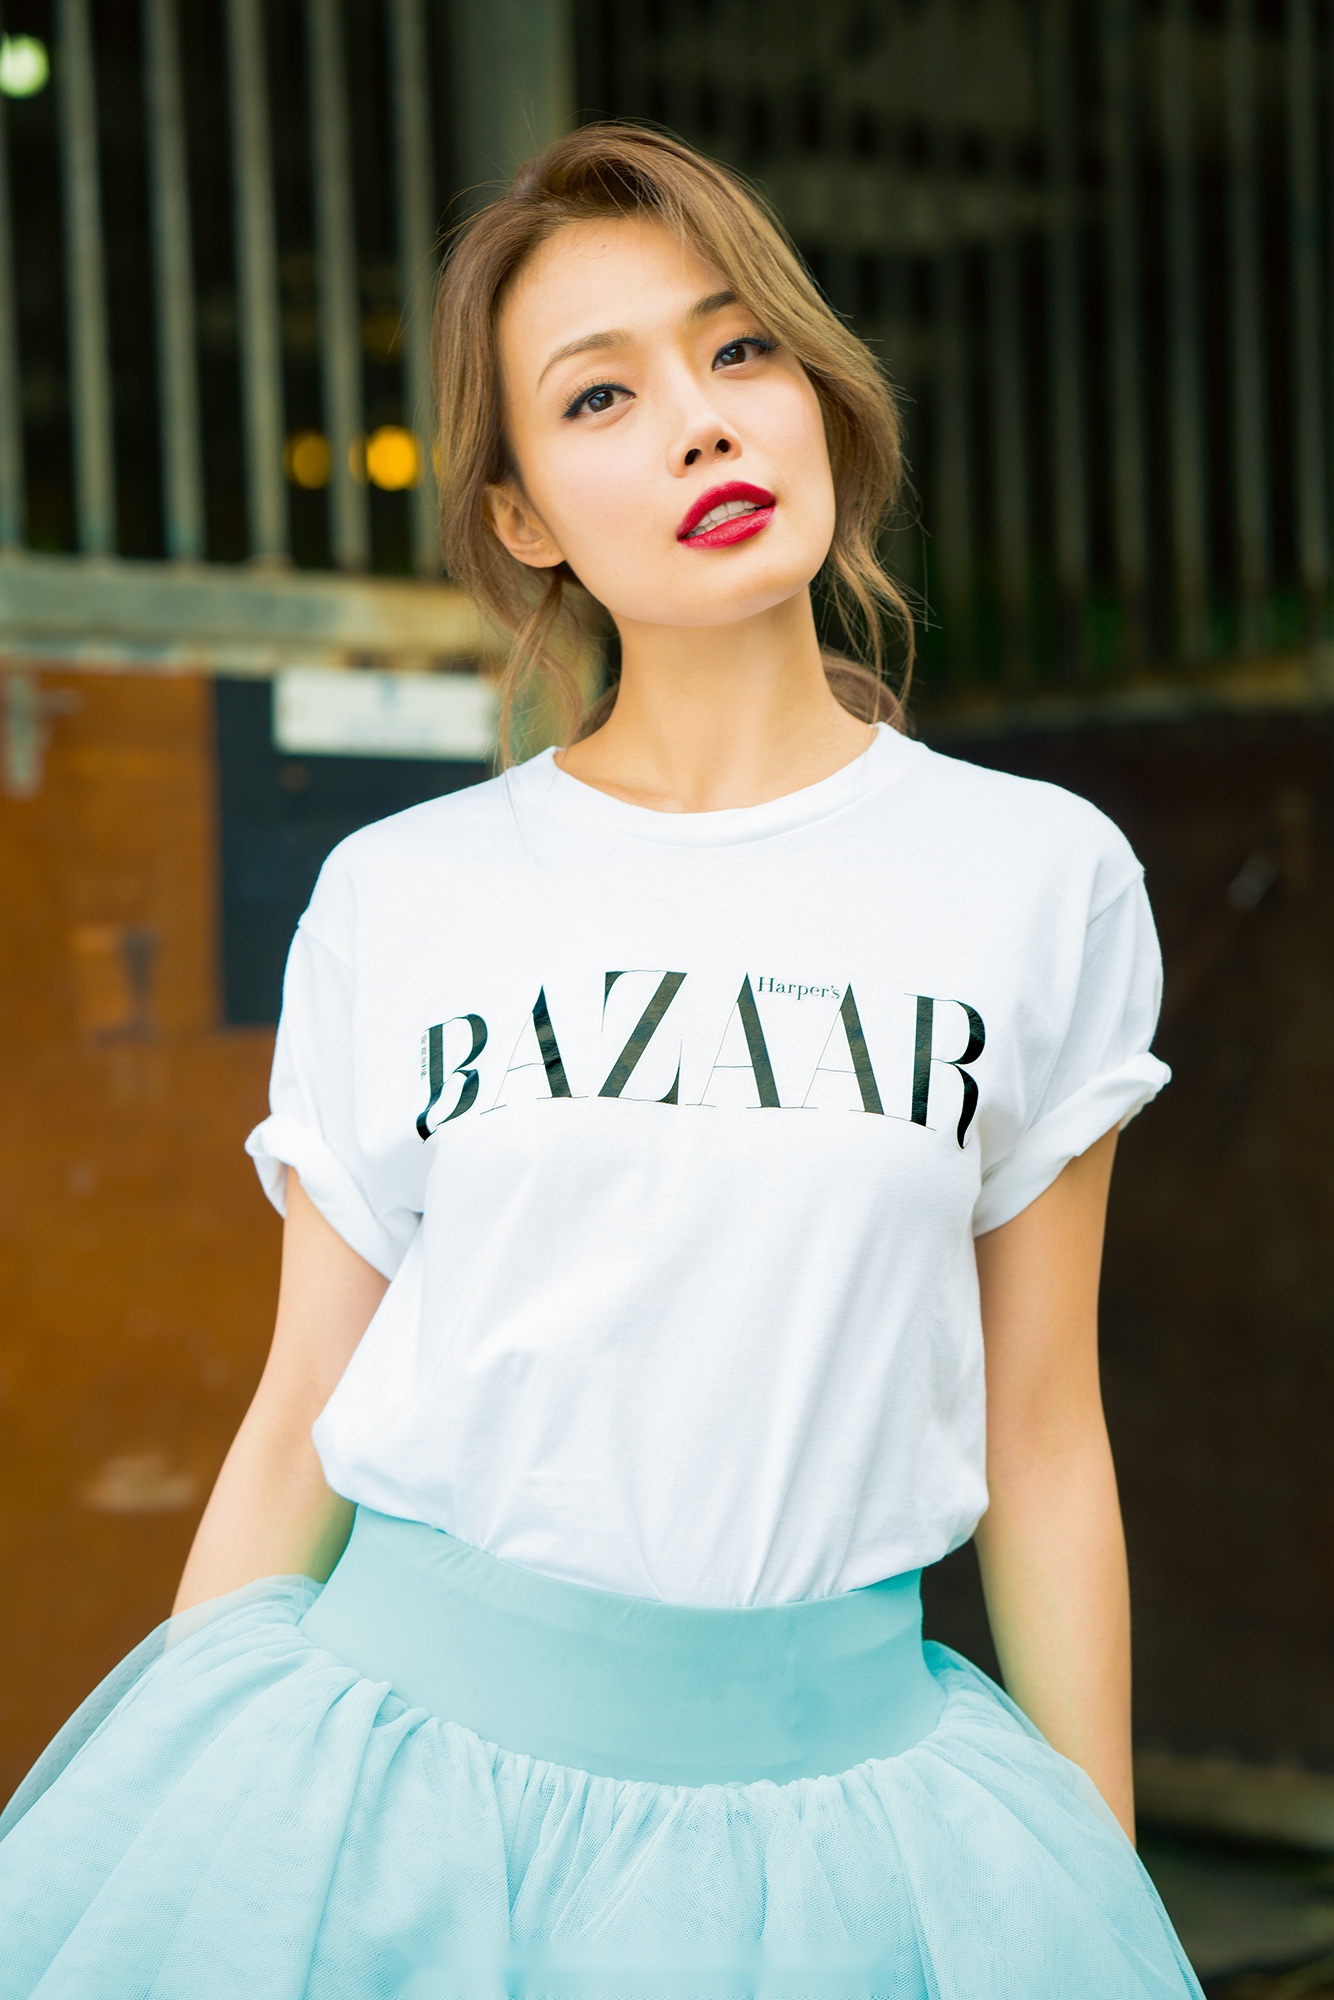 容祖儿x时尚芭莎《bazaar》大片上线!